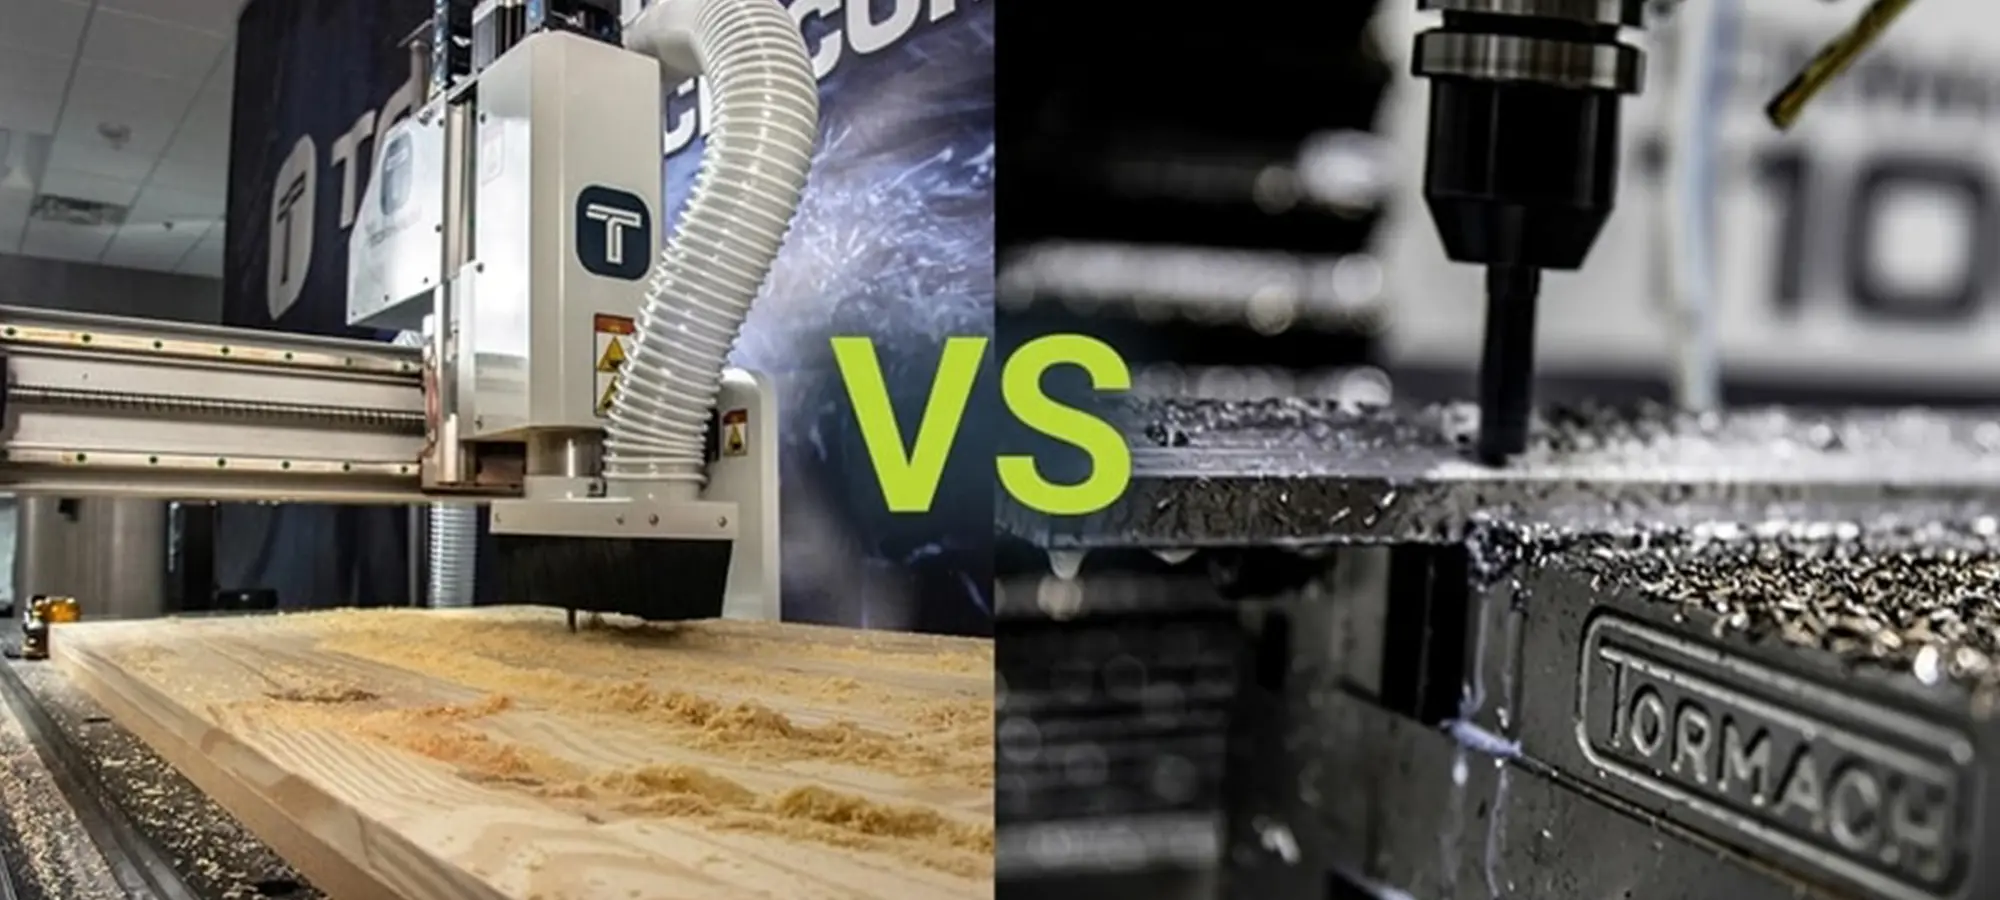 CNC Router vs CNC Milling